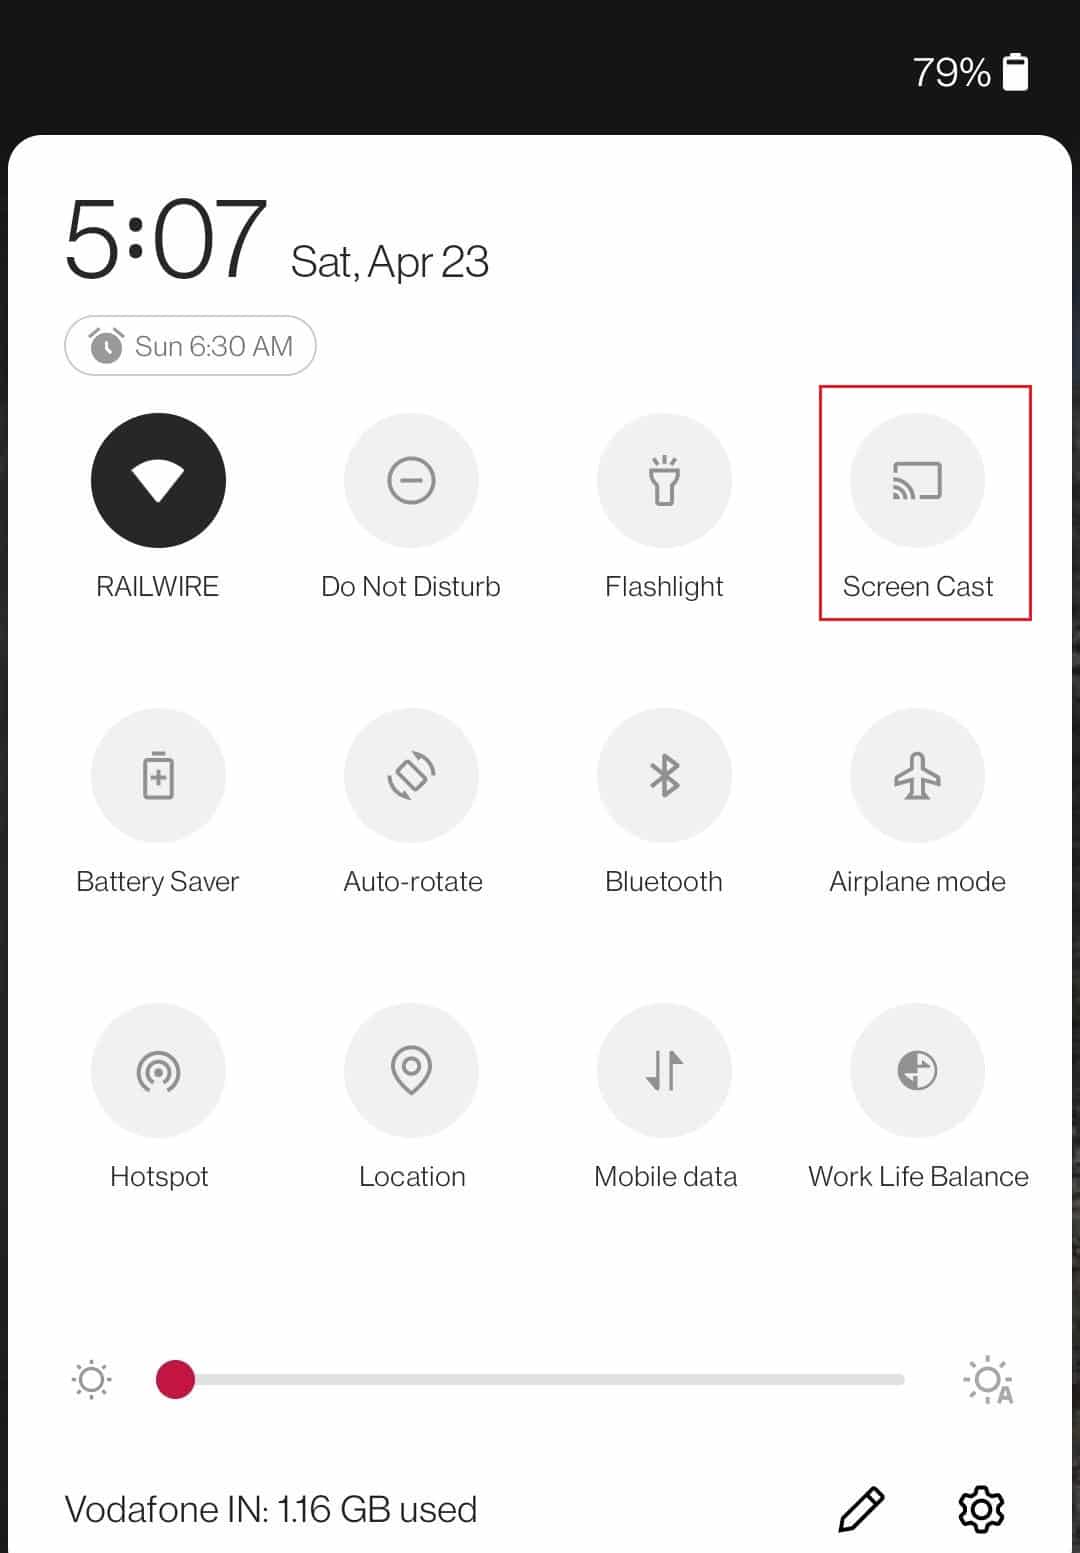 коснитесь значка скринкаста в меню уведомлений устройства Android